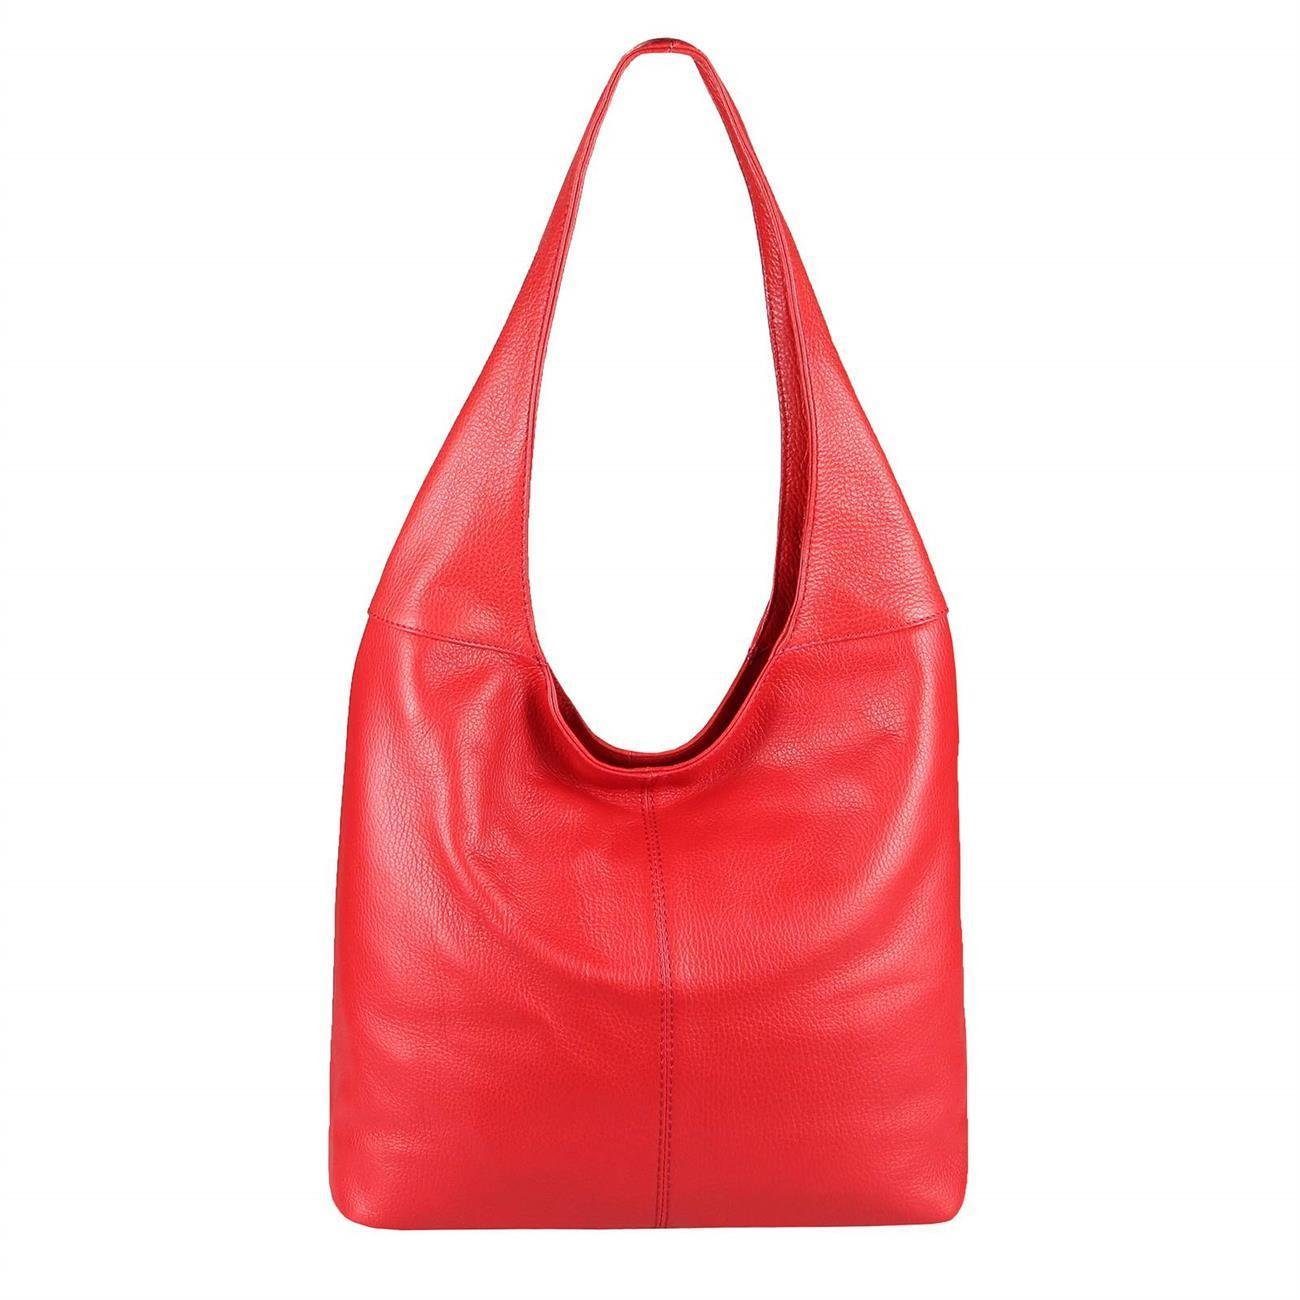 ITALYSHOP24 Shopper Made in Italy Damen Leder Tasche Schultertasche, ein Leichtgewicht, als Handtasche, Umhängetasche tragbar